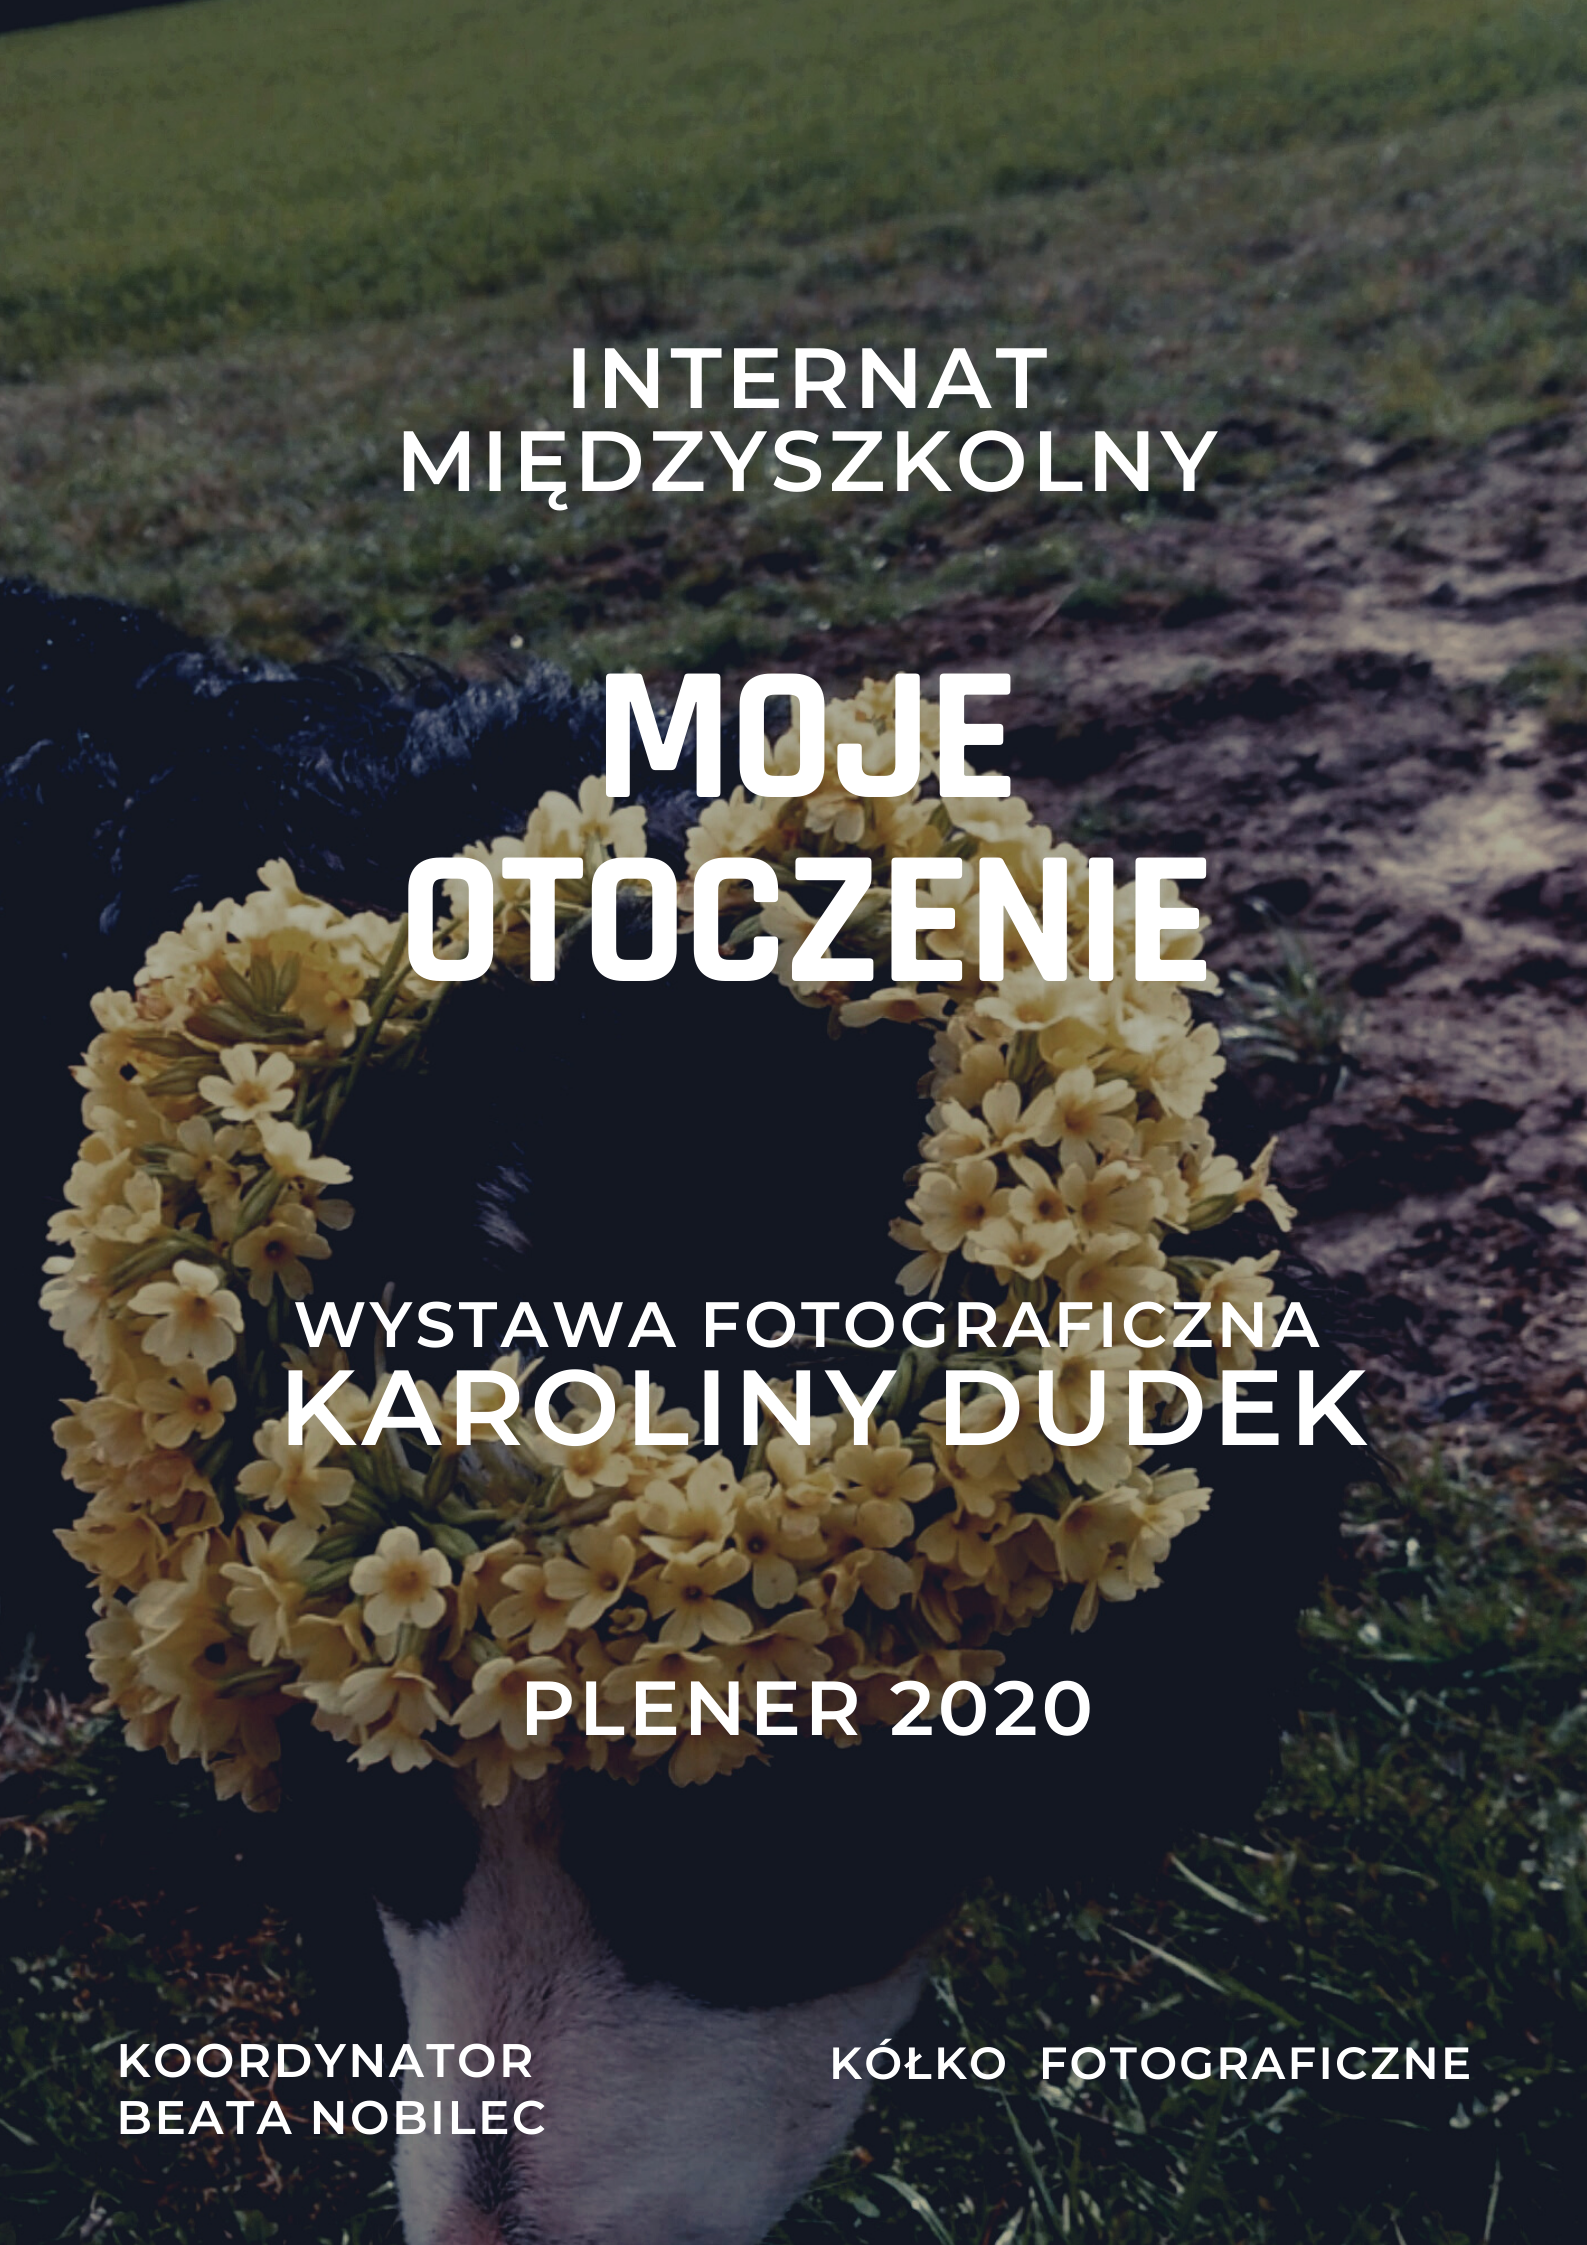 "MOJE OTOCZENIE" WYSTAWA FOTOGRAFII KAROLINY DUDEK PLENER 2020